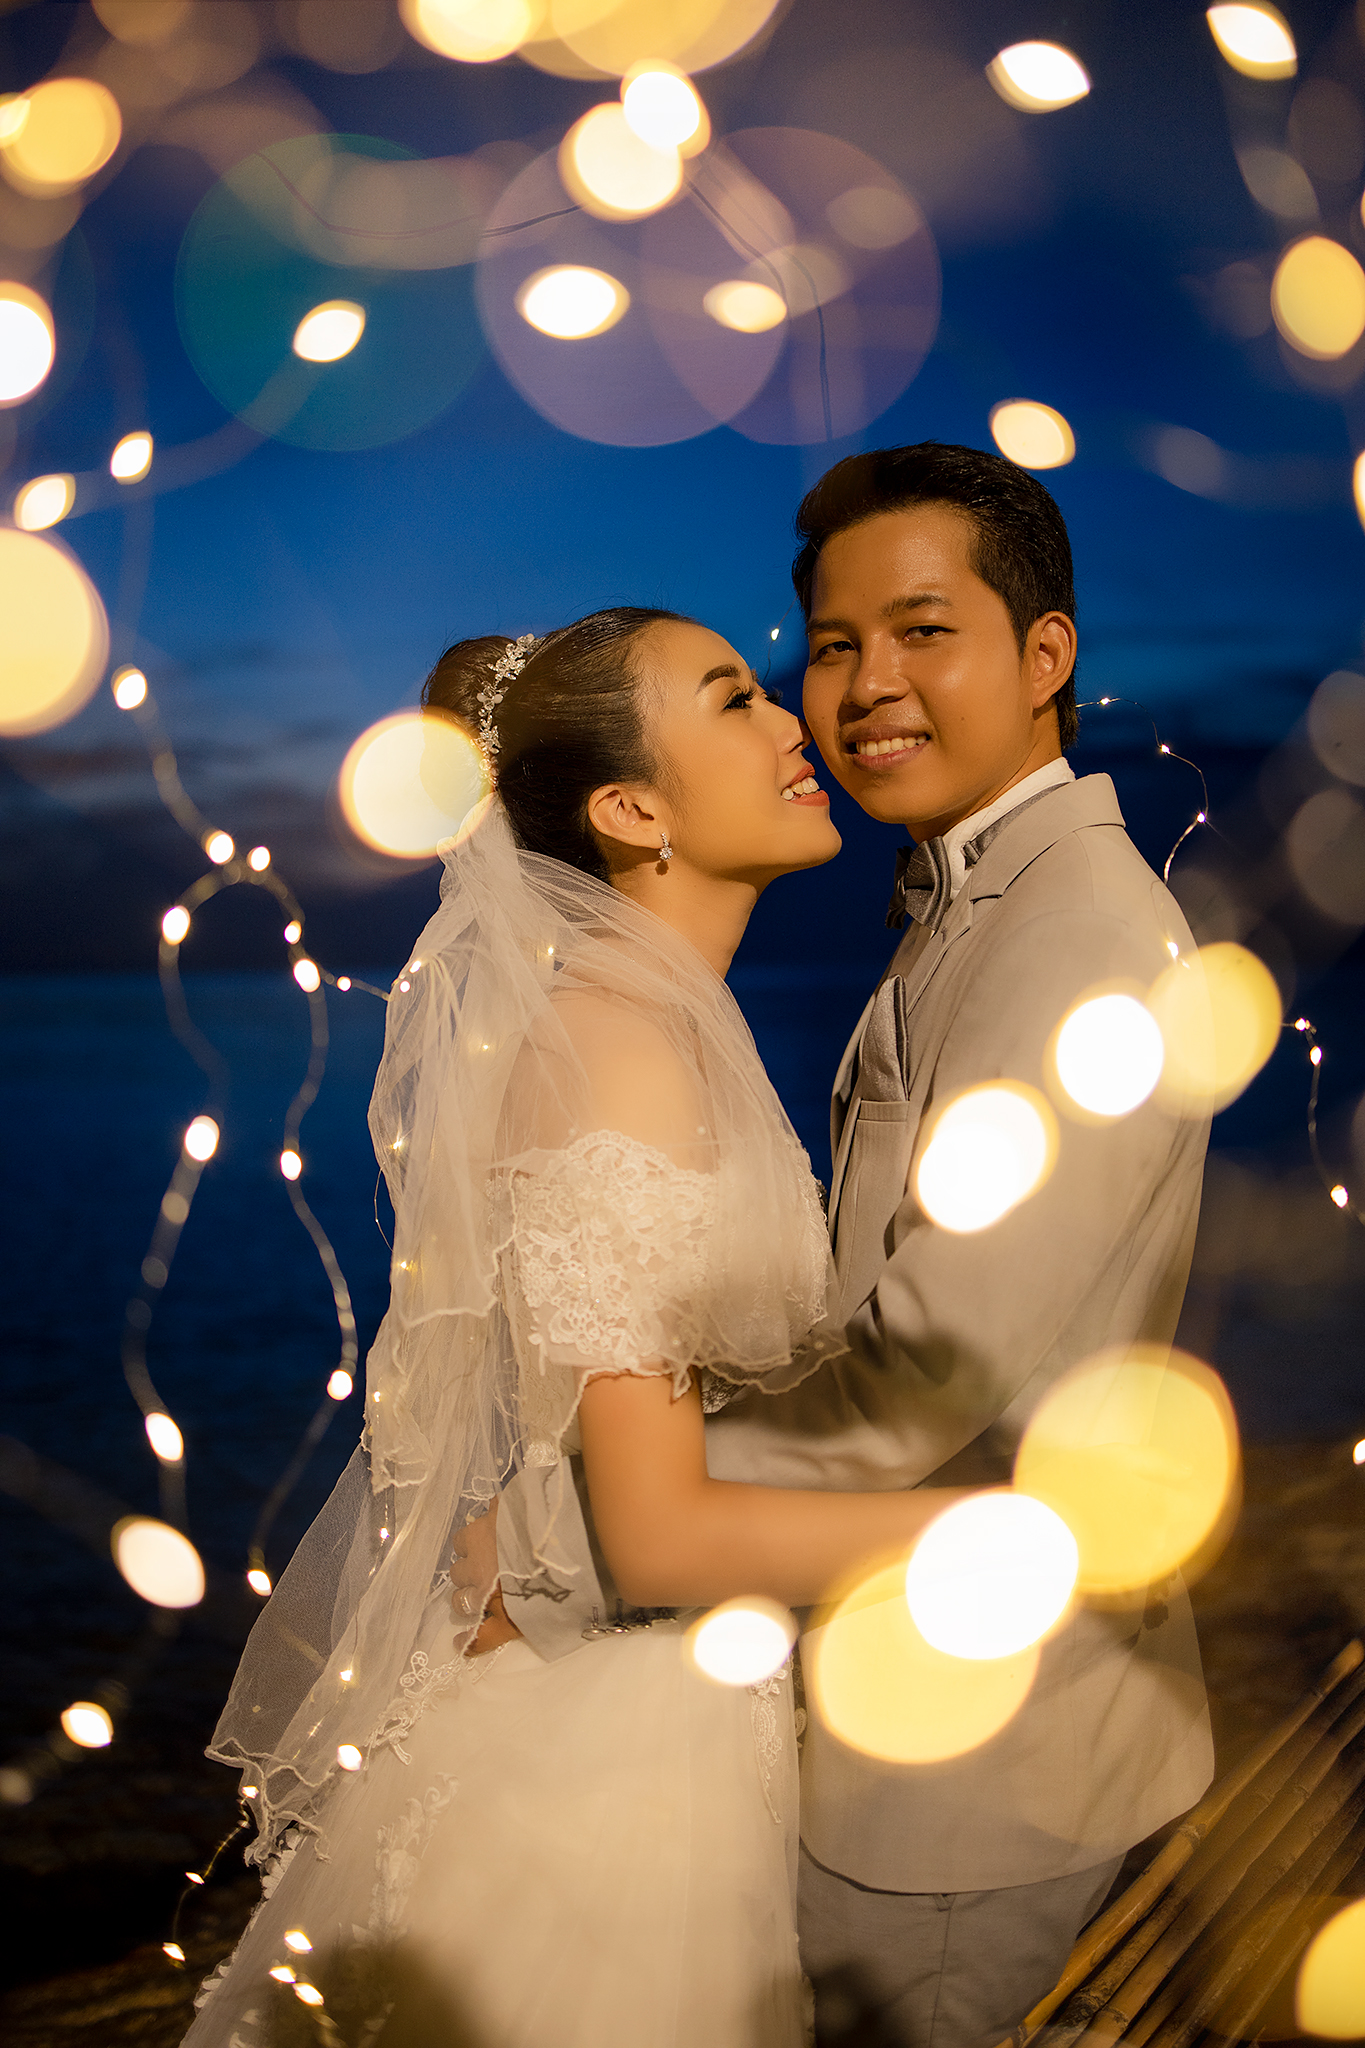 #weddingstudiochonburi #แพ็คเกจถ่ายภาพ #สถานที่ถ่ายภาพภาคตะวันออก #สถานที่ถ่ายพรีเวดดิ้งชลบุรี #แพ็คเกจถ่ายภาพราคาถูก #ถ่ายภาพครอบครัว #ของชำร่วยการ์ดเชิญ #แนะนำร้านแต่งงานจังหวัดชลบุรี #แต่งงาน #ชลบุรี #พรีเวดดิ้งชลบุรี #ถ่ายภาพแต่งงานชลบุรี #วิวทะเลชลบุรี #พรีเวดดิ้งริมทะเล #ถ่ายภาพแต่งงานริมทะเล #สตูดิโอชลบุรี #เวดดิ้งบางแสน #แพ็คเกจแต่งงาน #แพ็เกจแต่งงานราคาถูก #เวดดิ้งสตูดิโอชลบุรี #wedding #weddingchonburi #prewdding #พรีเวดดิ้งราคาถูก #พรีเวดดิ้ง #ถ่ายภาพแต่งงาน #ภาพแต่งงาน #เขาสามมุก #ถ้ำค้างคาว